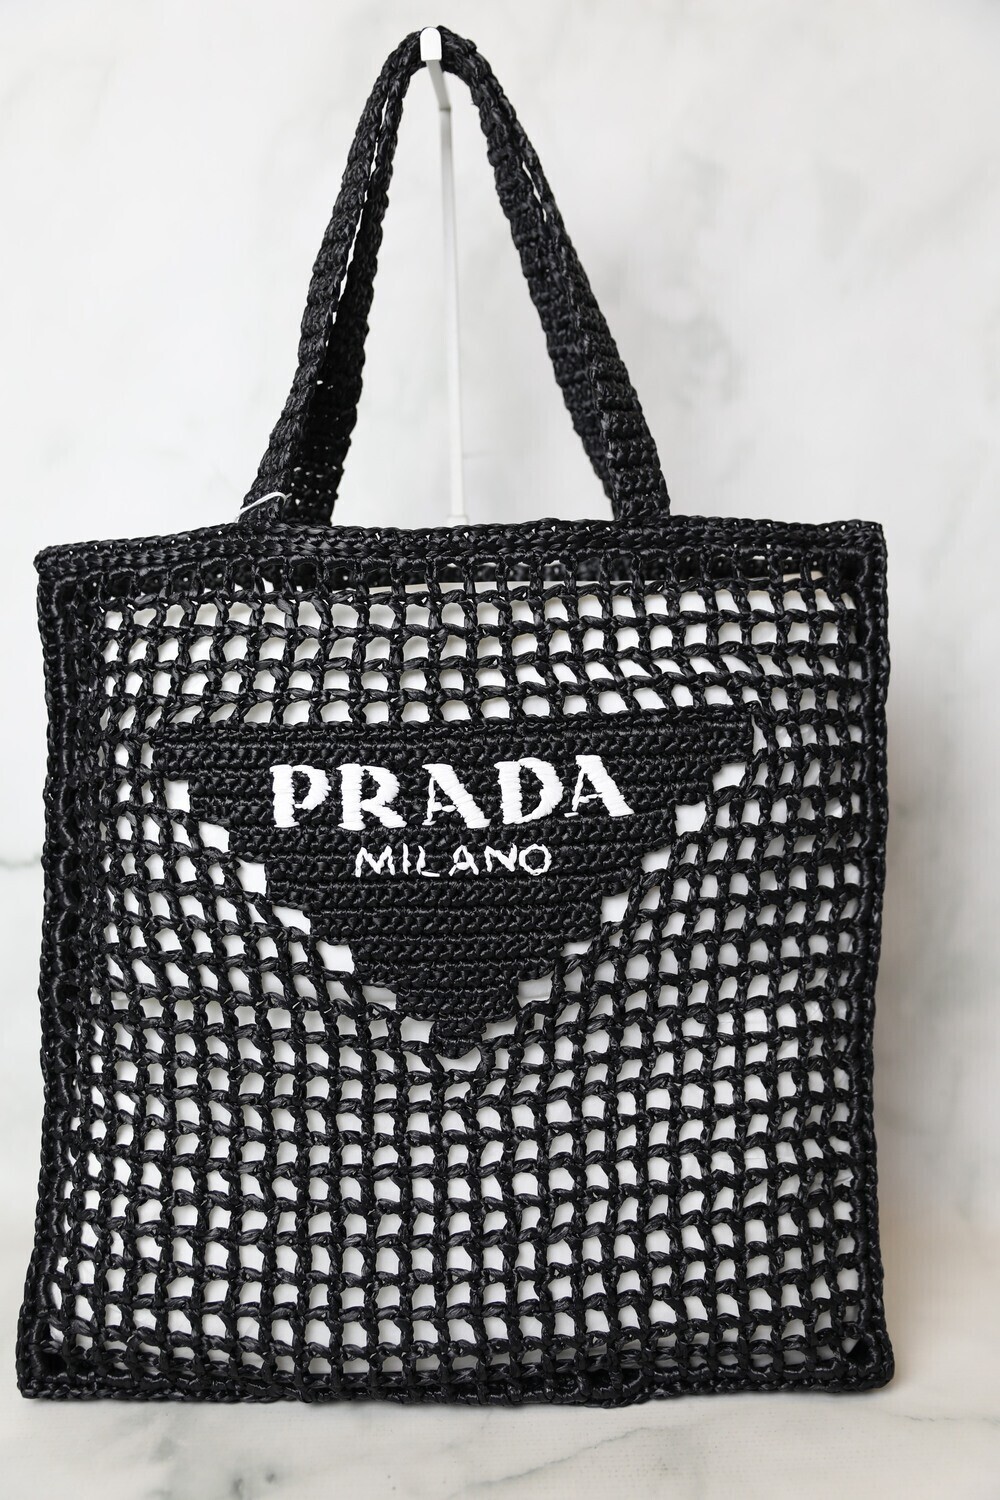 Prada Raffia Tote, Black Open Weave, New in Dustbag MA001